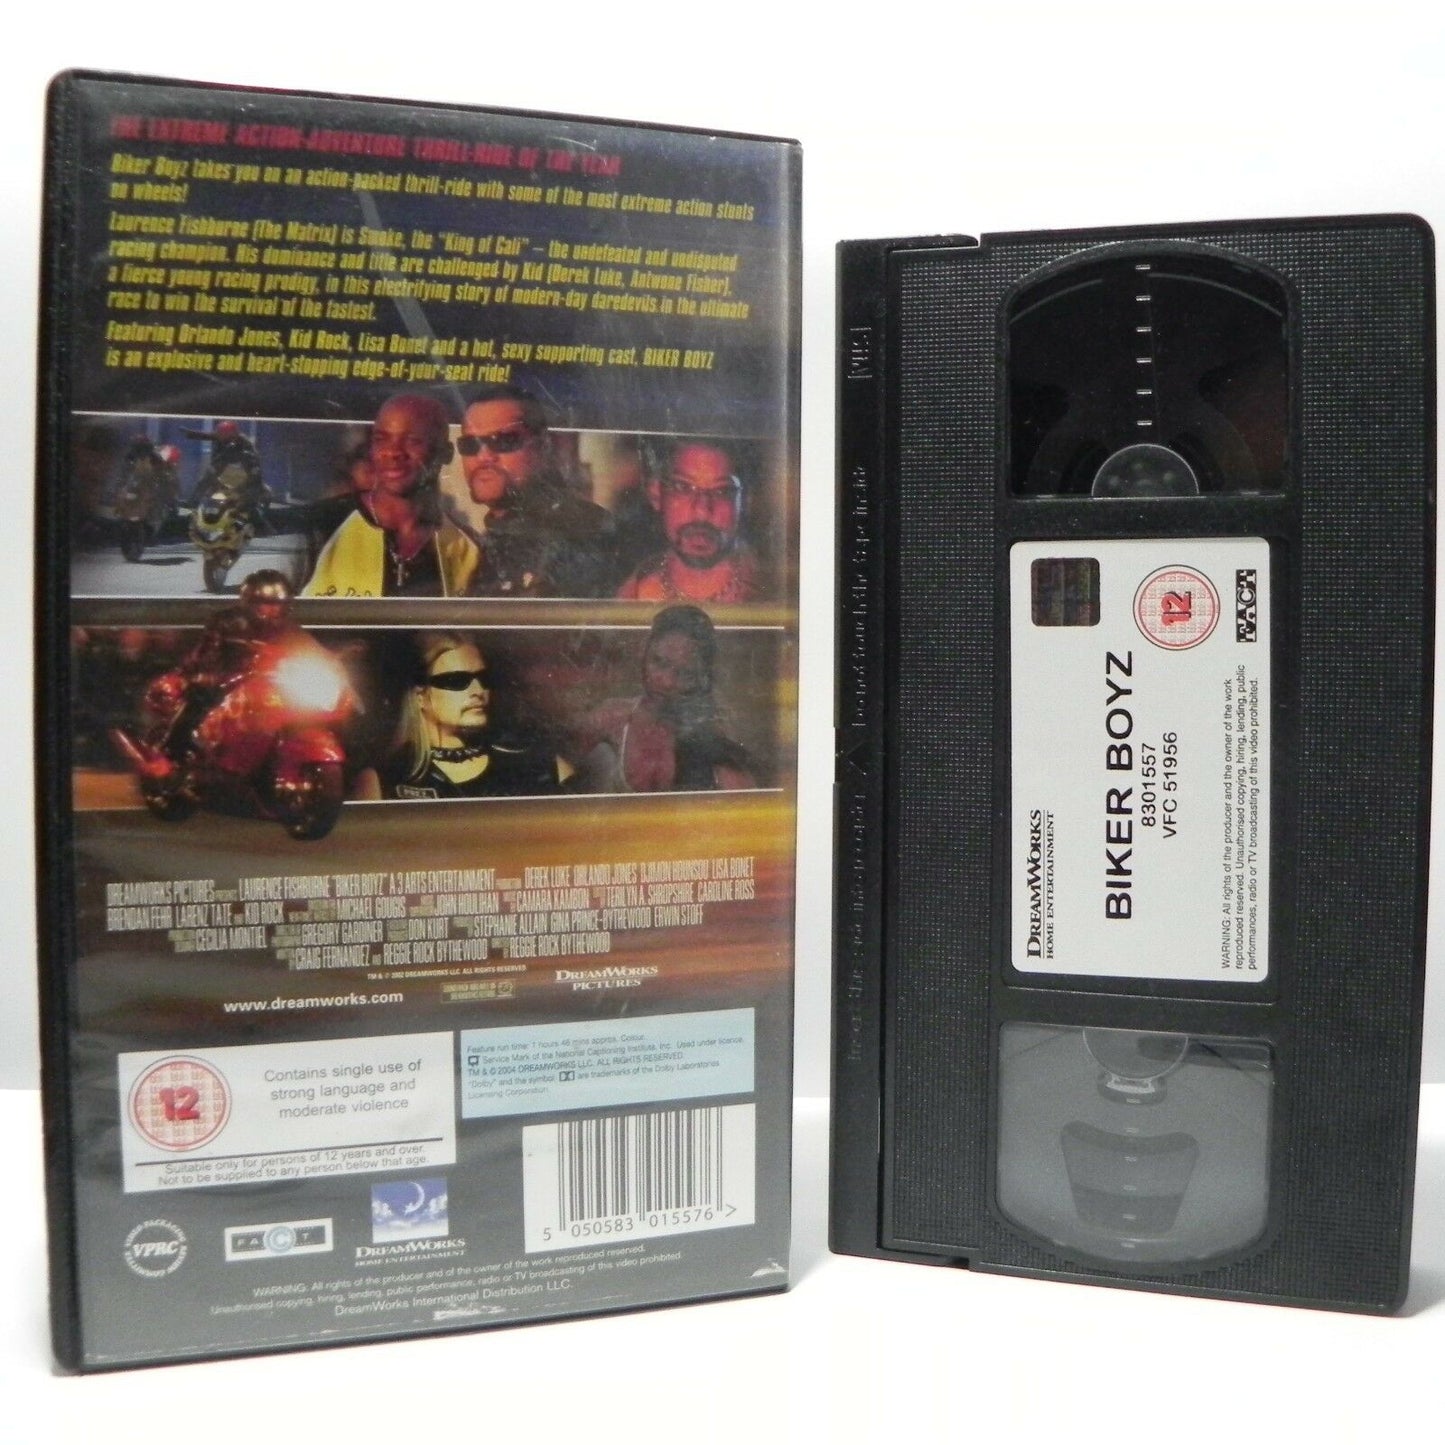 Biker Boyz: Survival Of The Fastest - Action/Adventure - L.Fishburne - Pal VHS-